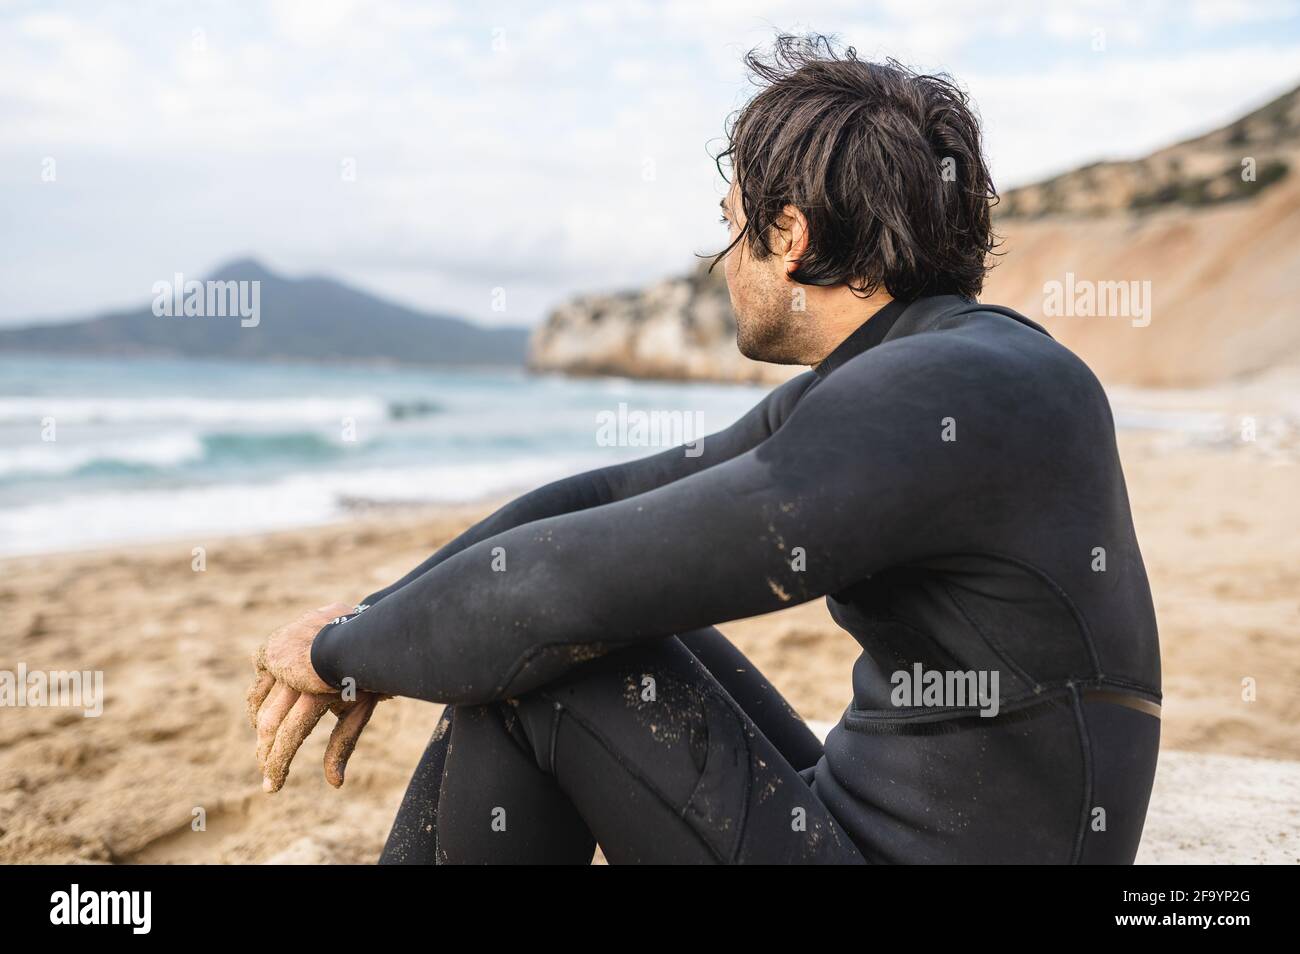 Rückansicht junger Mann mit Tauchanzug sitzt auf dem Sand und blickt auf das Meer. Nasser Mann, der sich nach dem Schwimmen ausruhte. Stockfoto